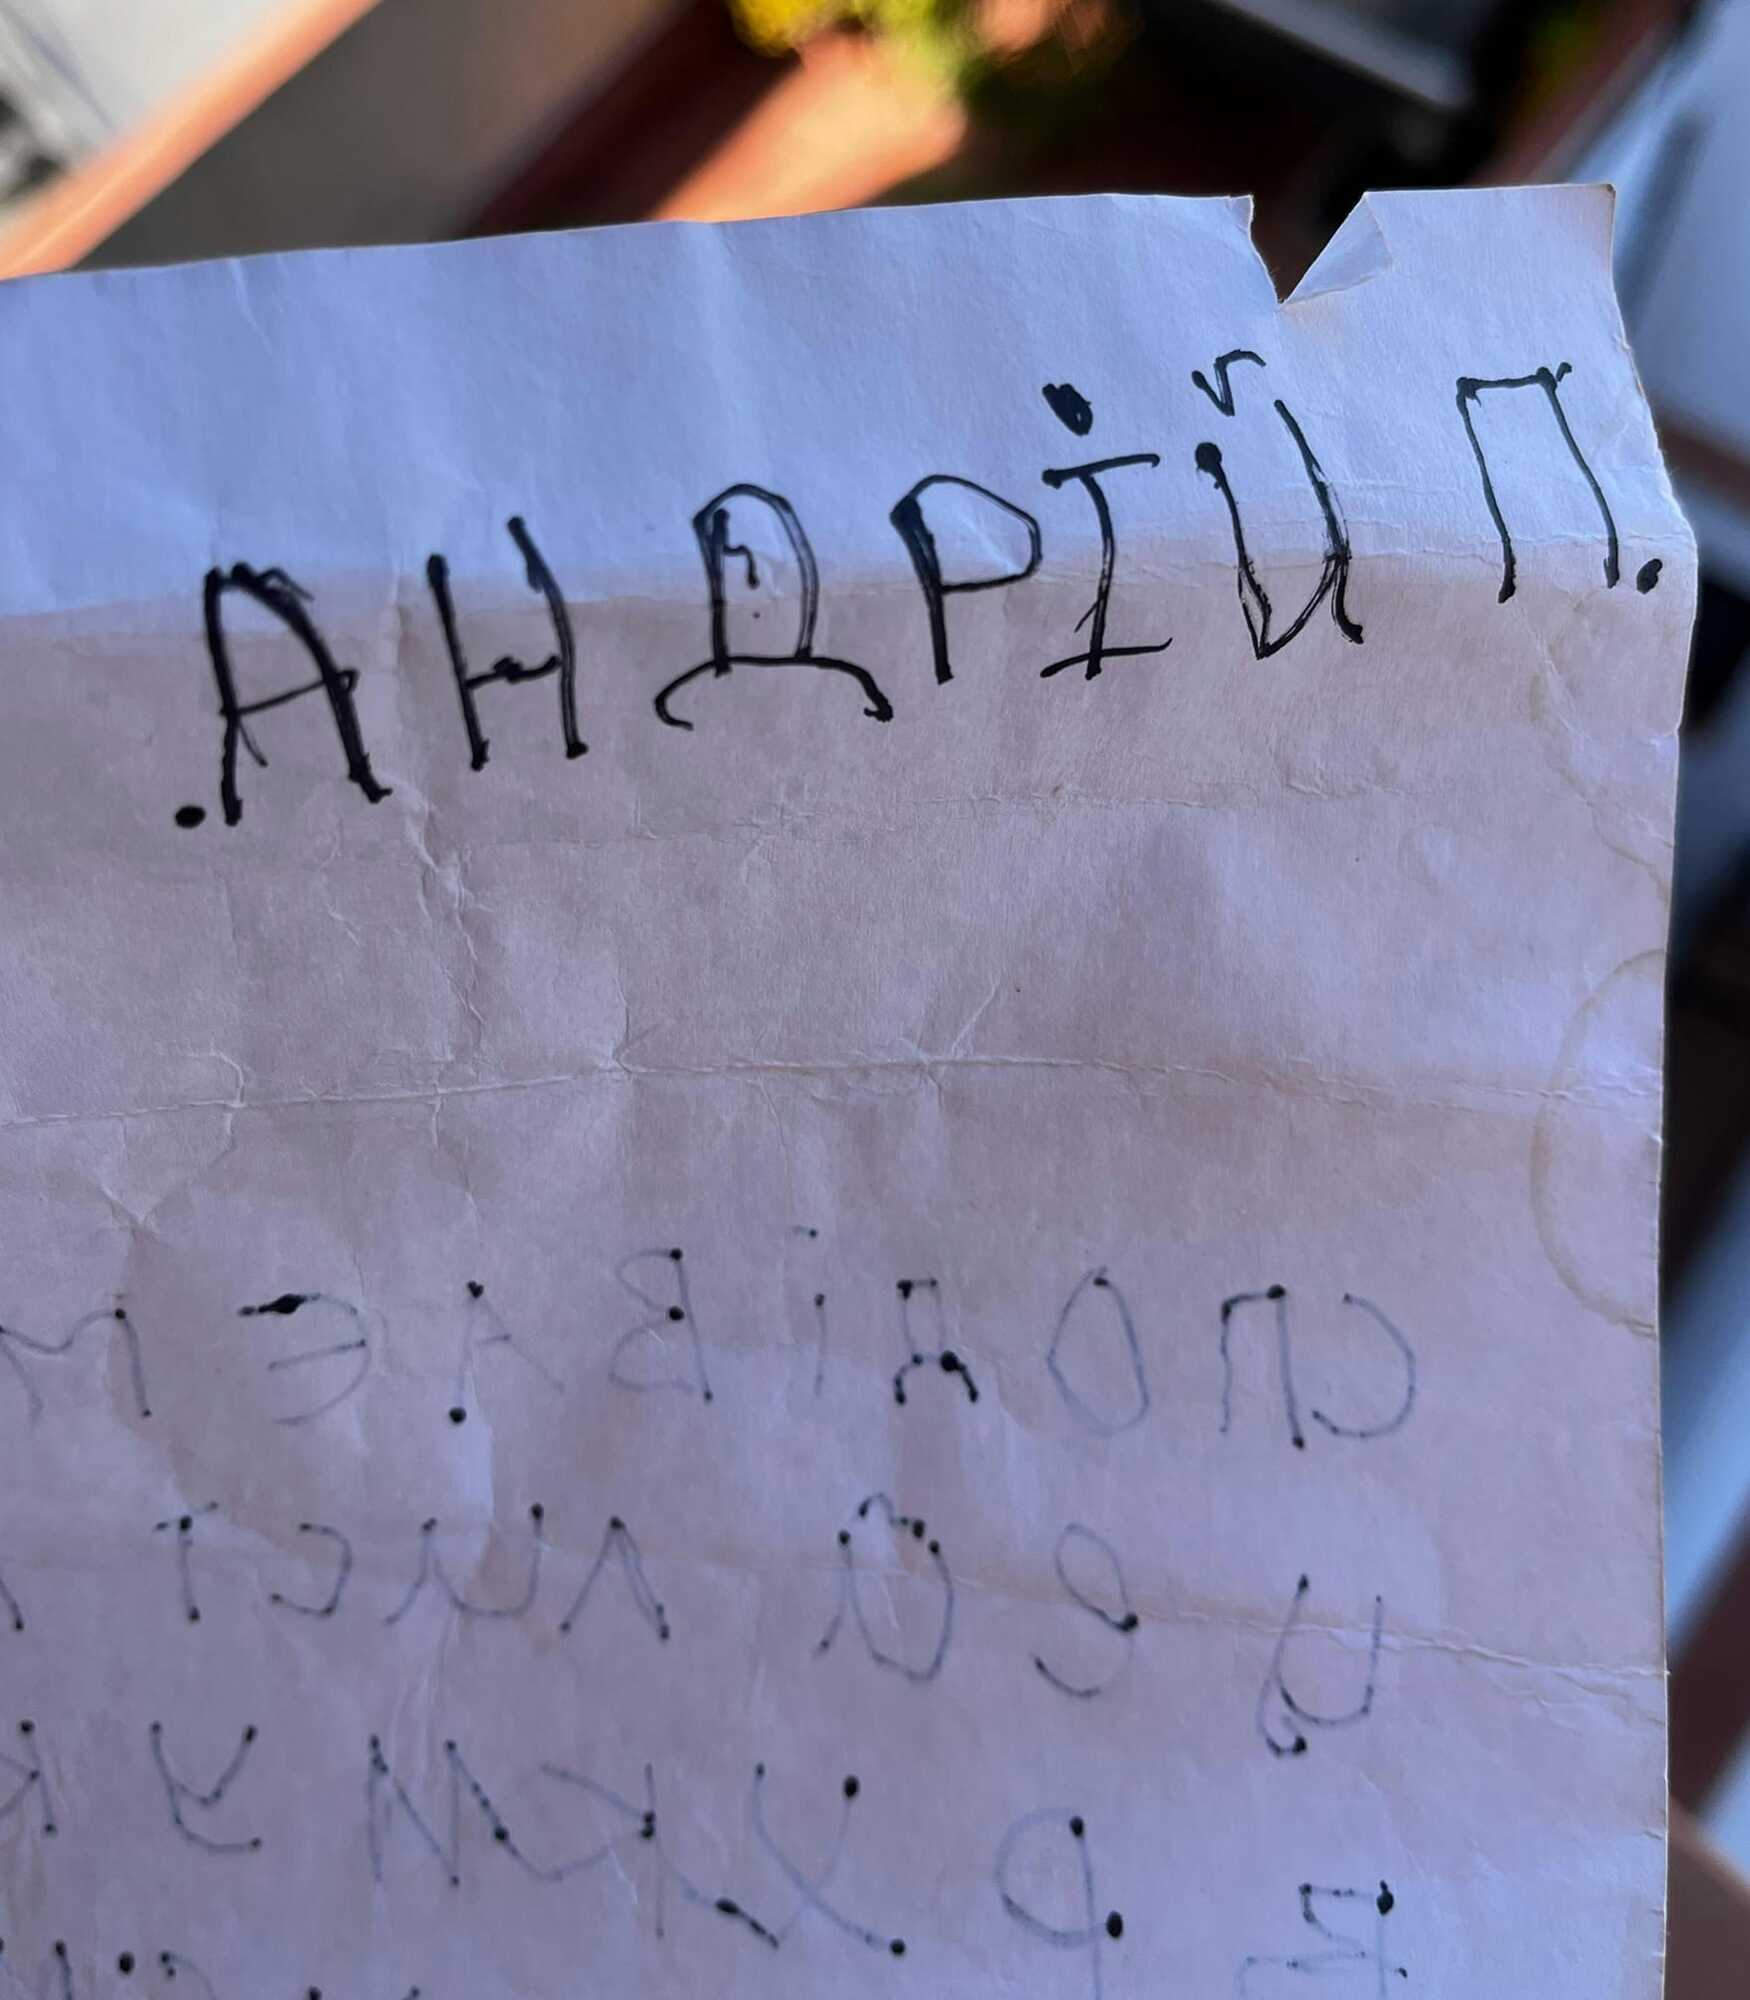 На пляже Одесщины якобы обнаружили бутылку с запиской от ребенка из Крыма: что не так в истории и какие детали удалось выяснить. Фото